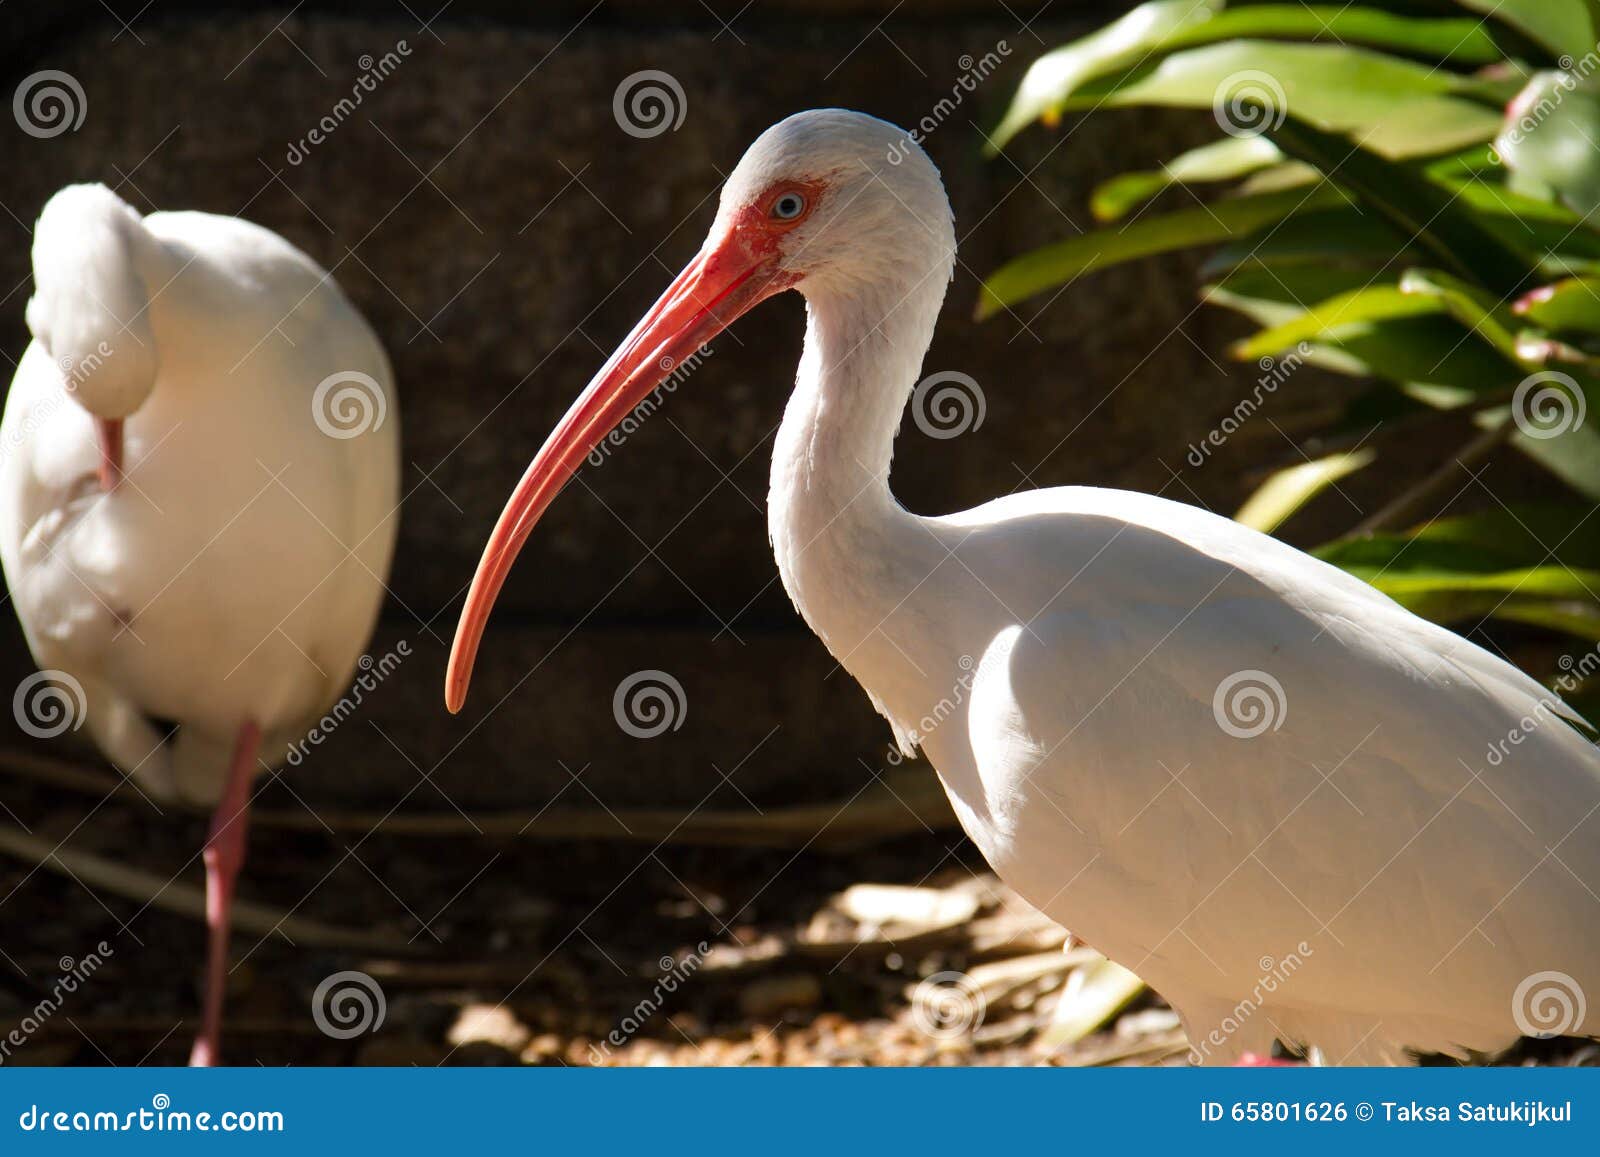 Dois pássaros dos íbis e uma planta. A posição e uma planta de dois pássaros brancos dos íbis no lado direito, Miami, Florida